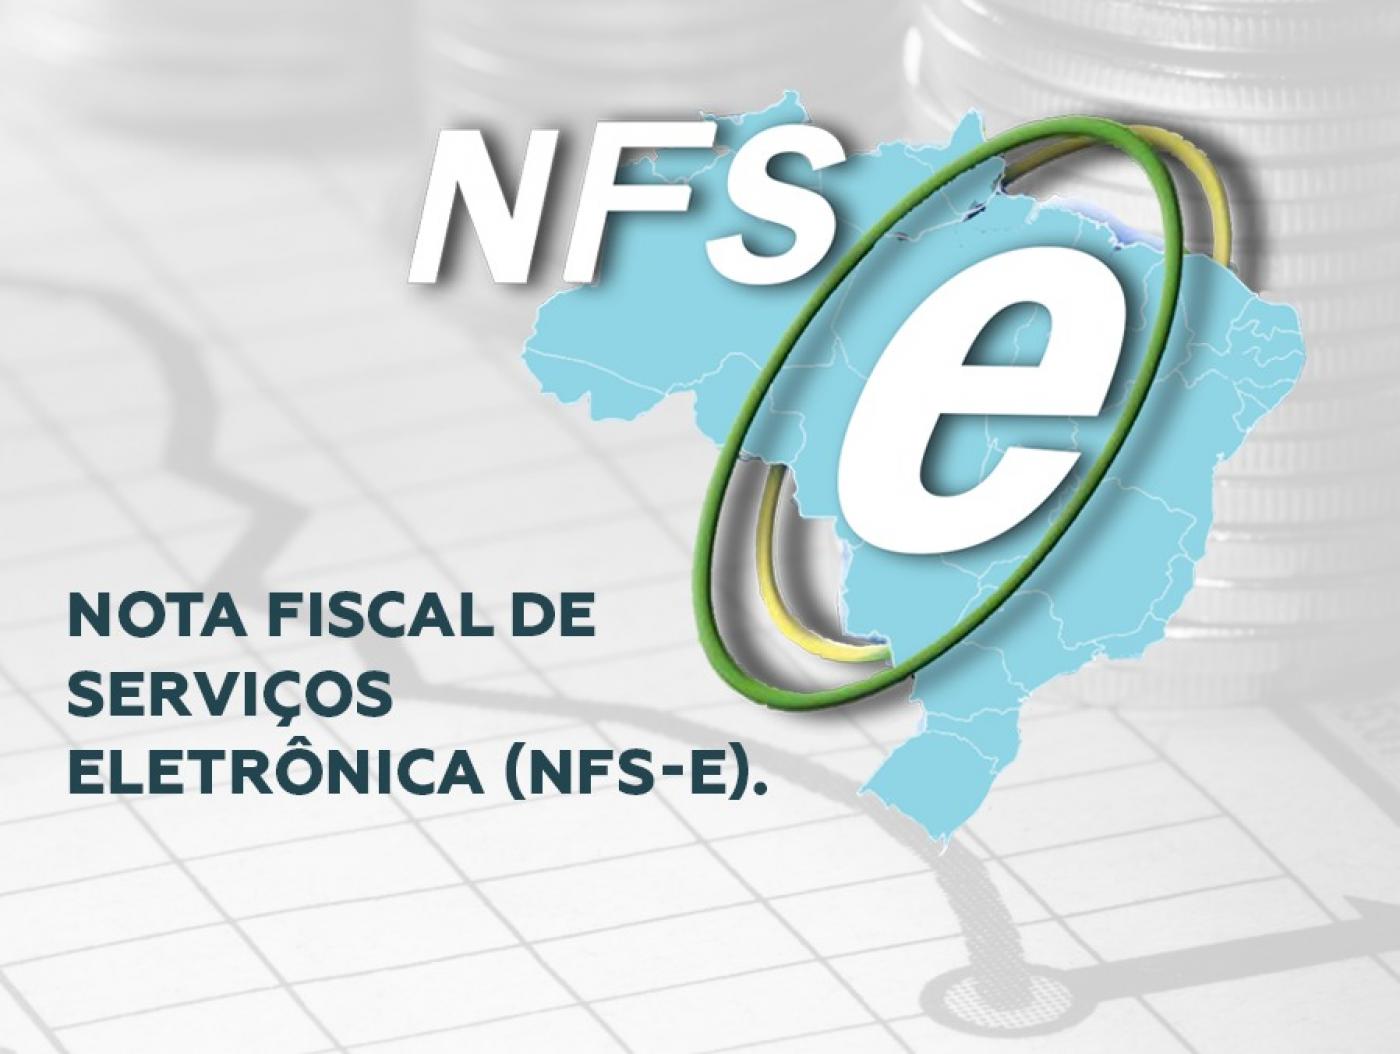 Nota fiscal de serviço Brasília-DF: como emitir